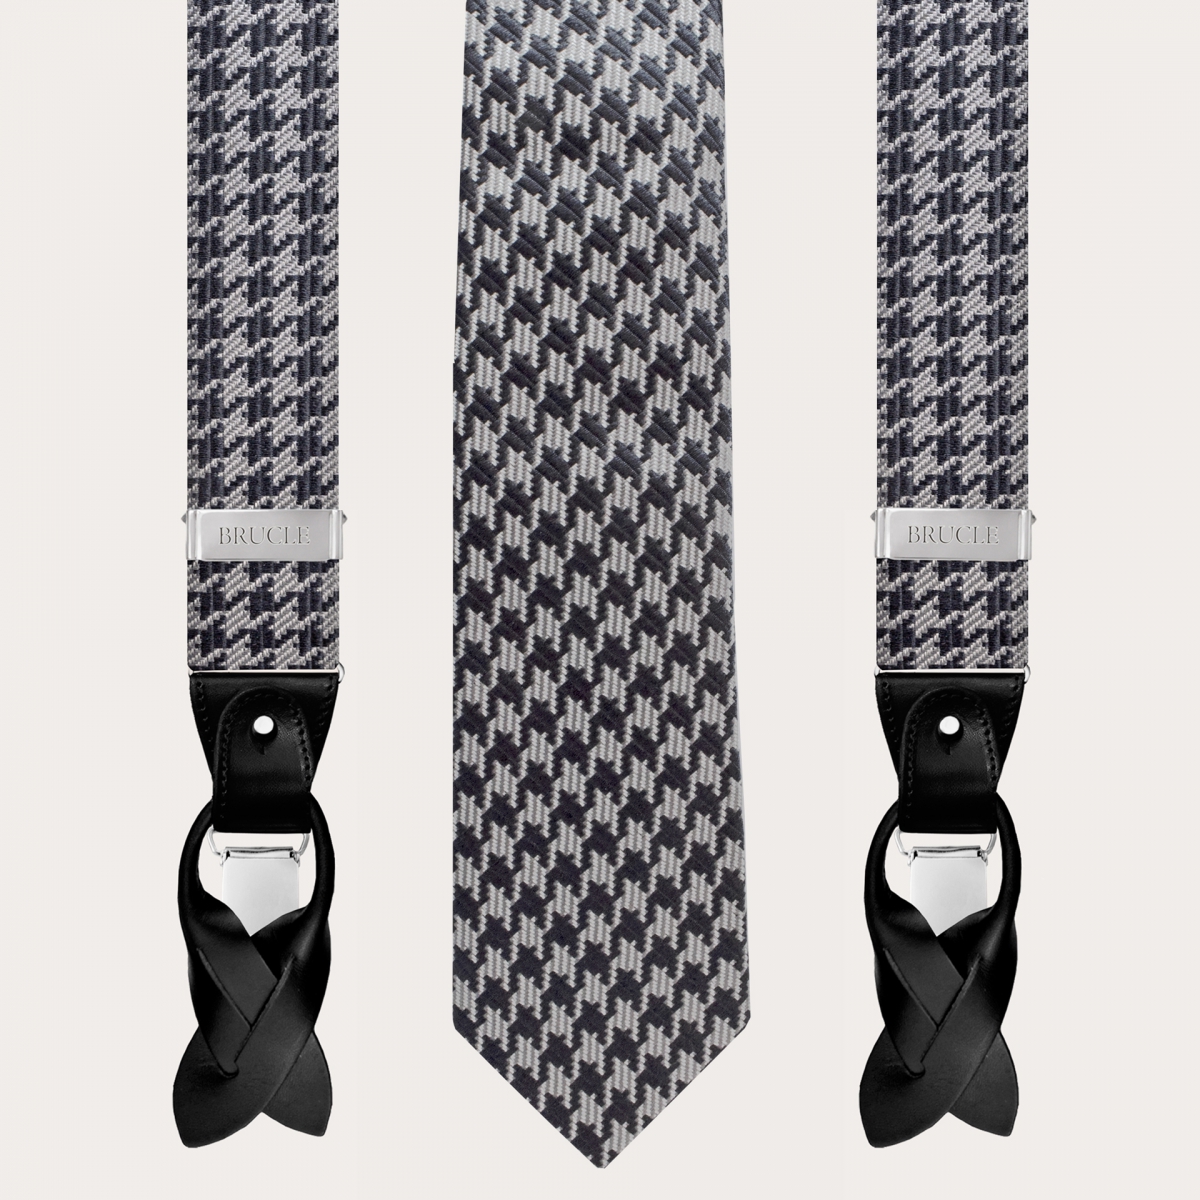 BRUCLE Abgestimmtes Set aus Hosenträgern und Krawatte aus Jacquardseide, Schwarz-Hahnentrittmuster